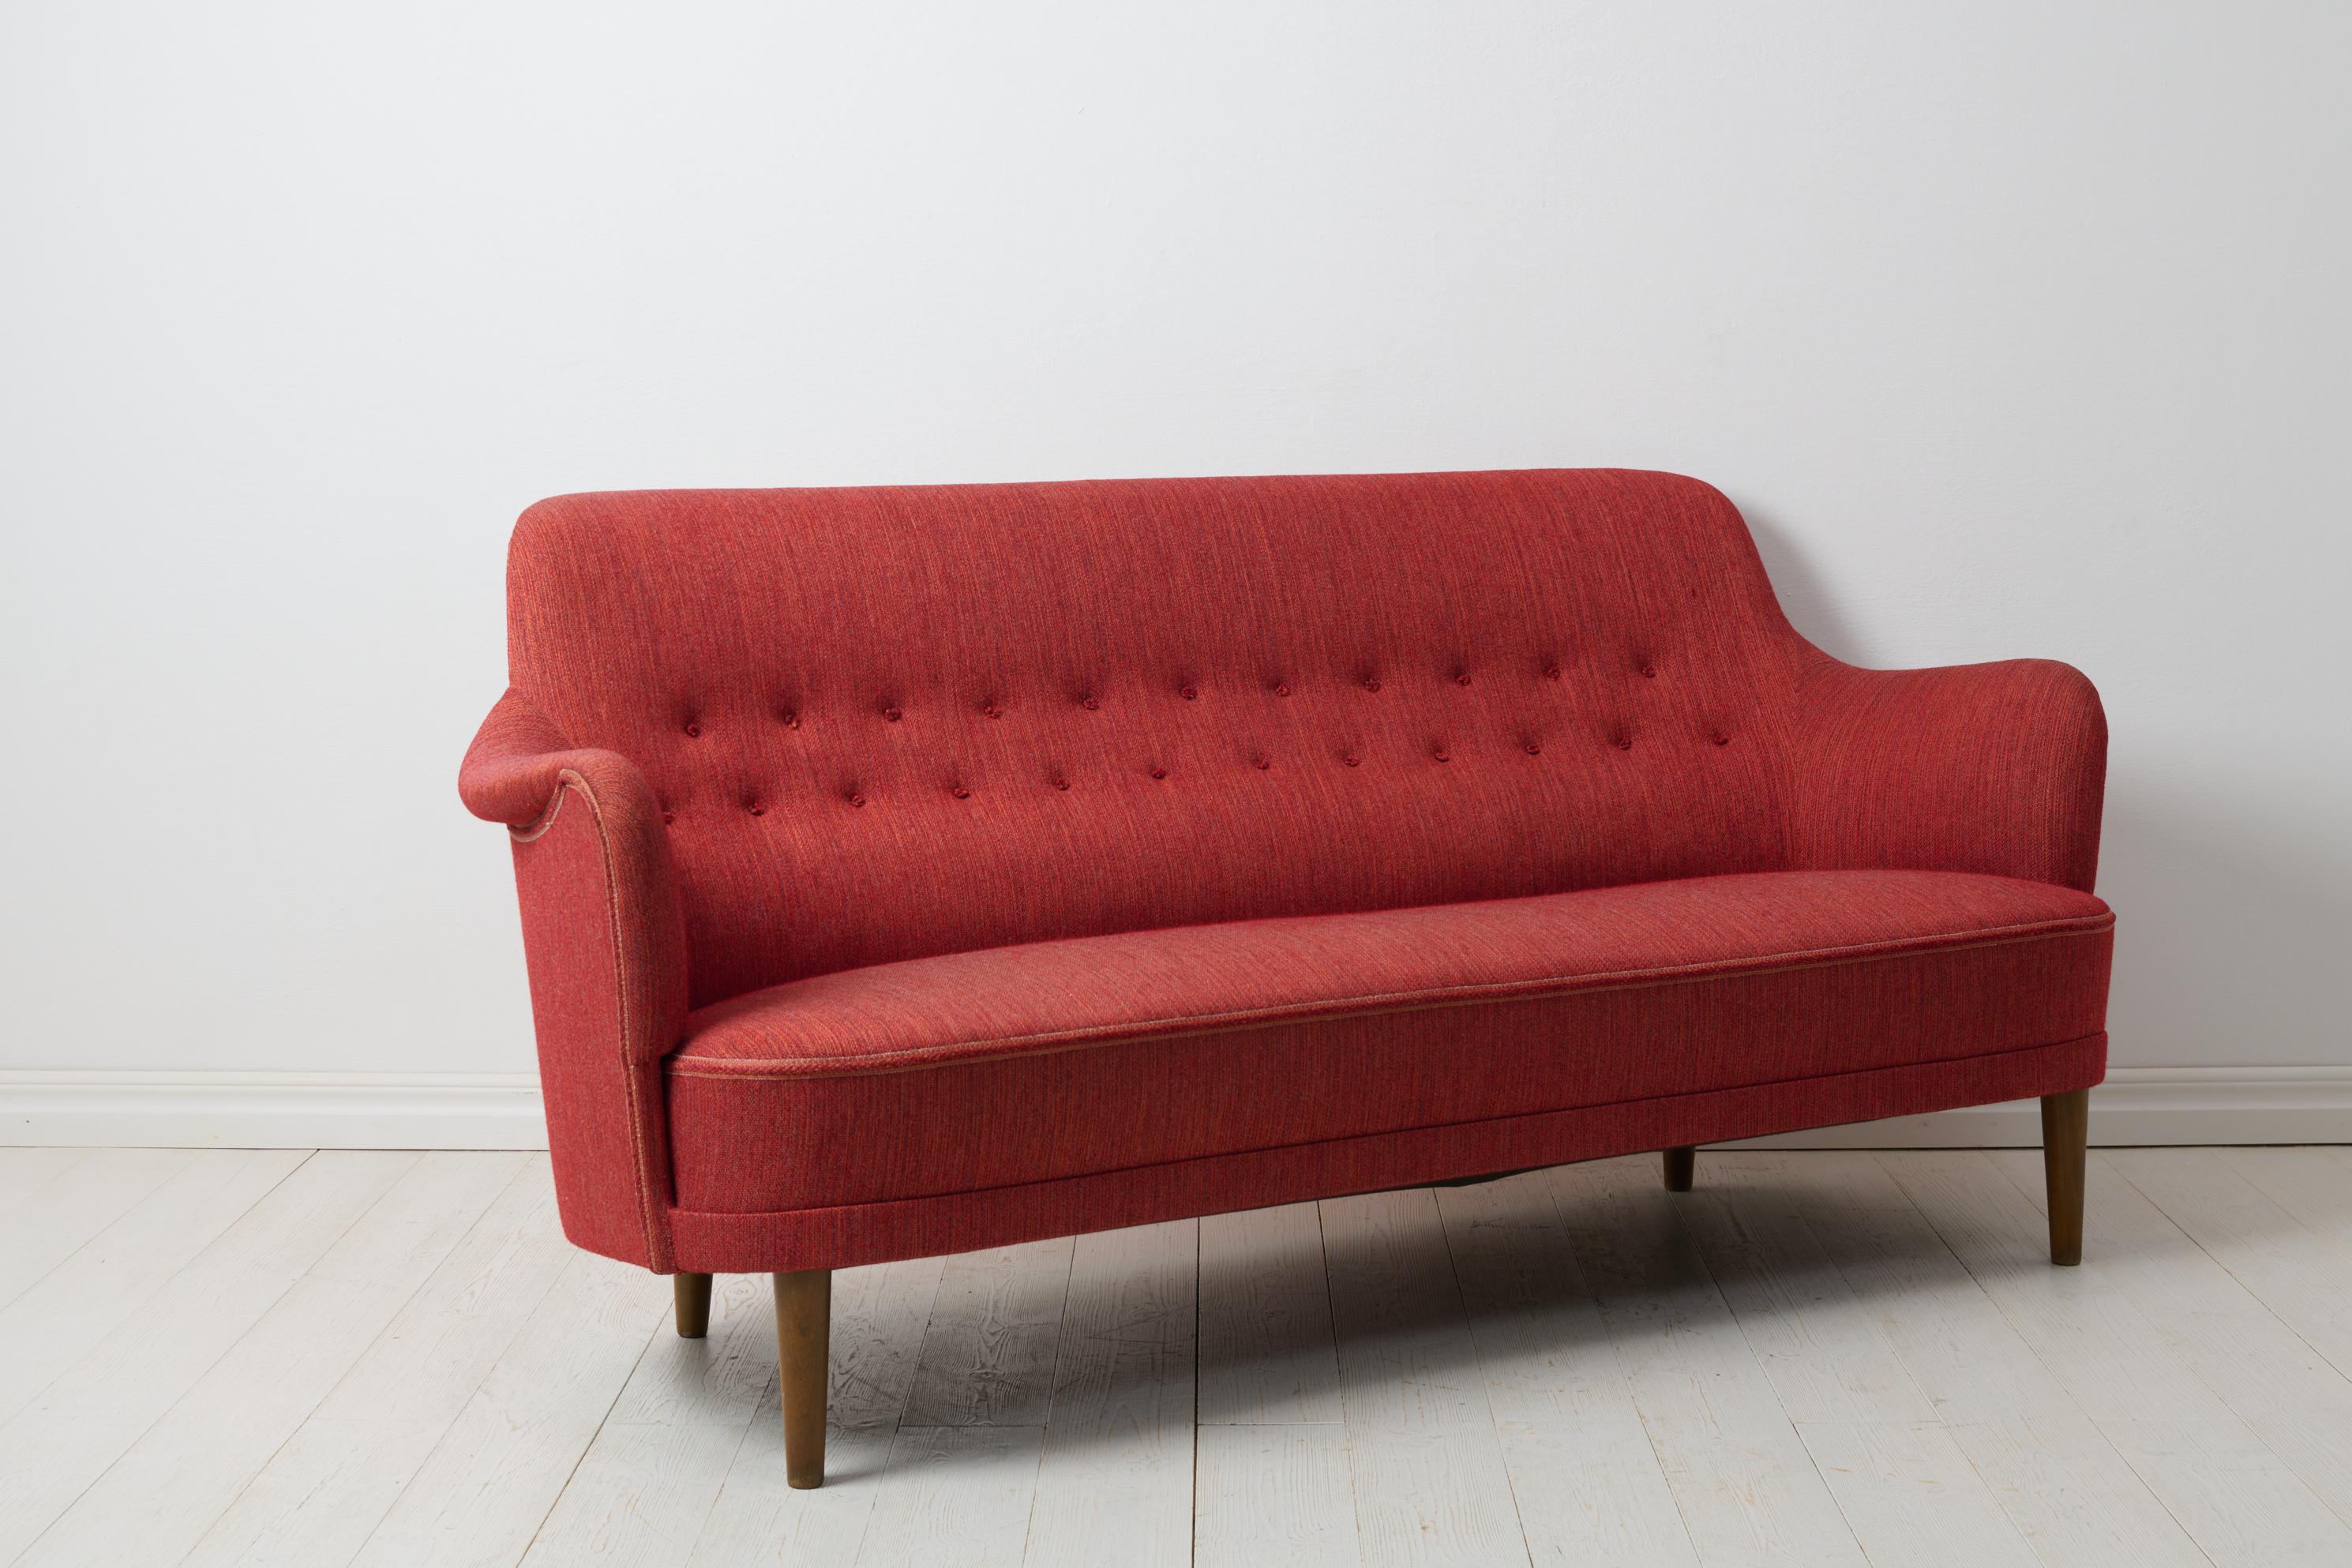 Scandinavian Swedish Modern Sofa “Samsas” by Carl Malmsten for O.H Sjögren In Good Condition For Sale In Kramfors, SE